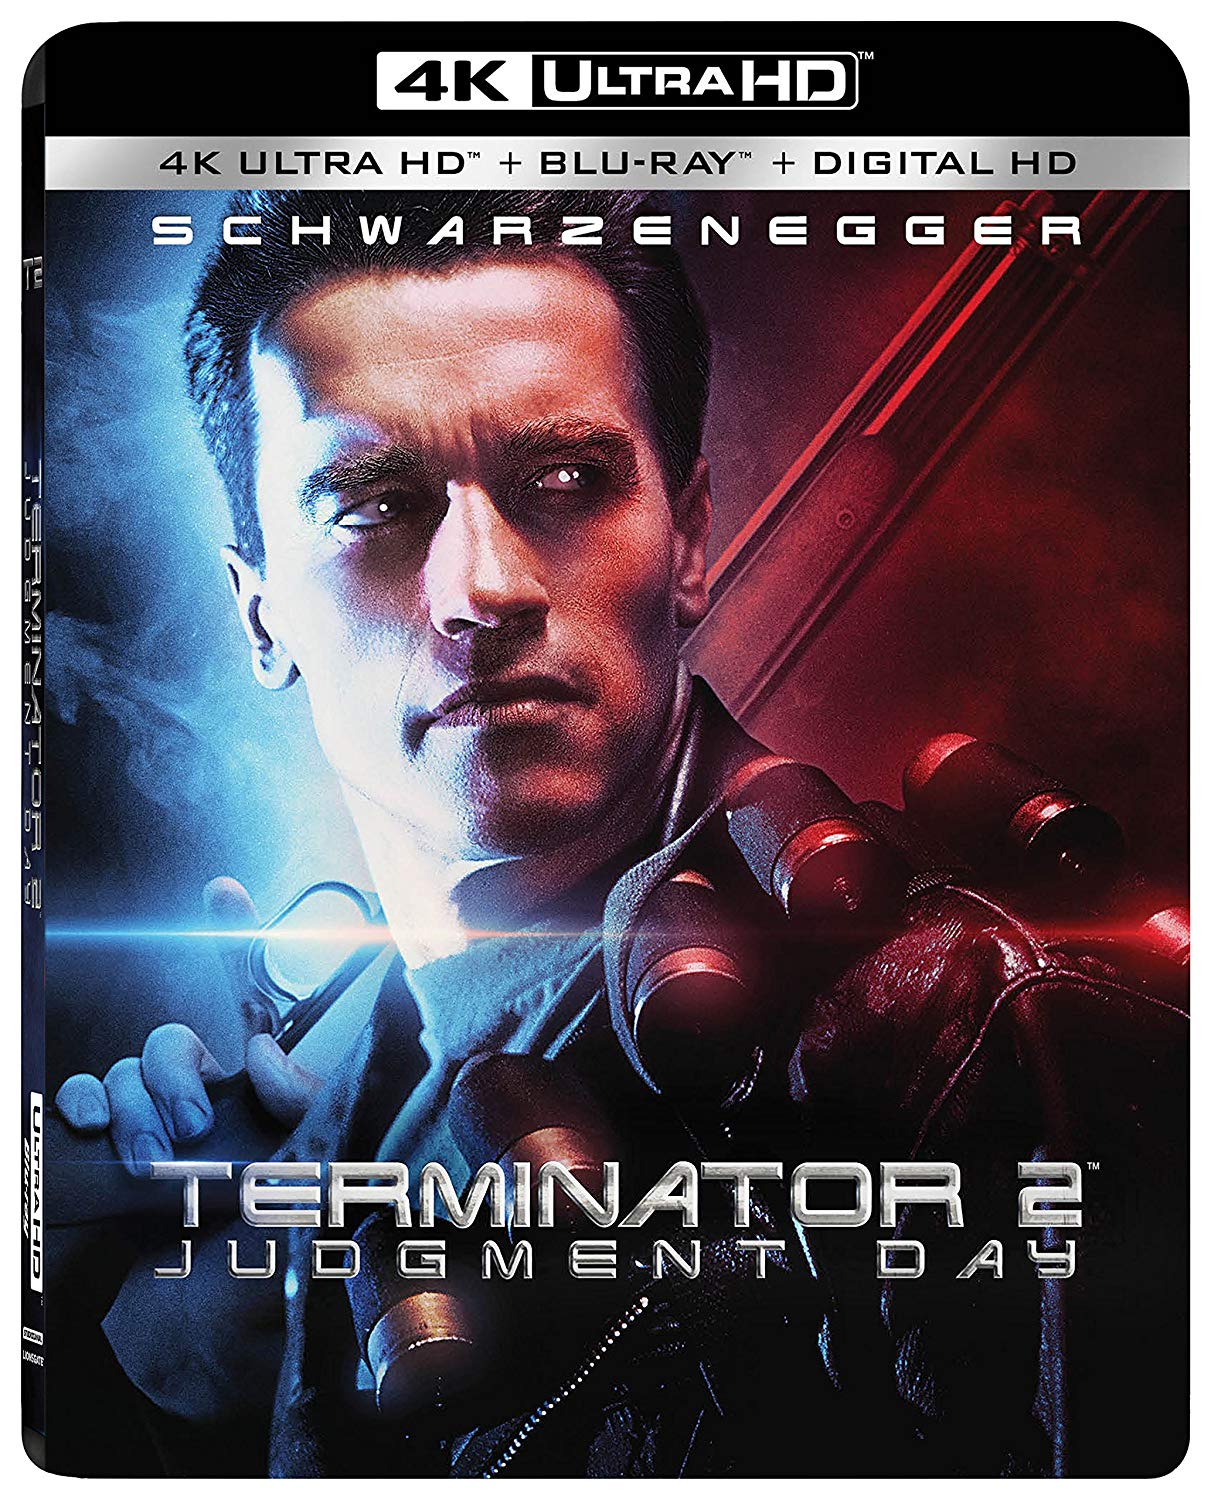 Terminator 2: Judgement Day 4K Ultra HD + Blu-ray + Digital HD